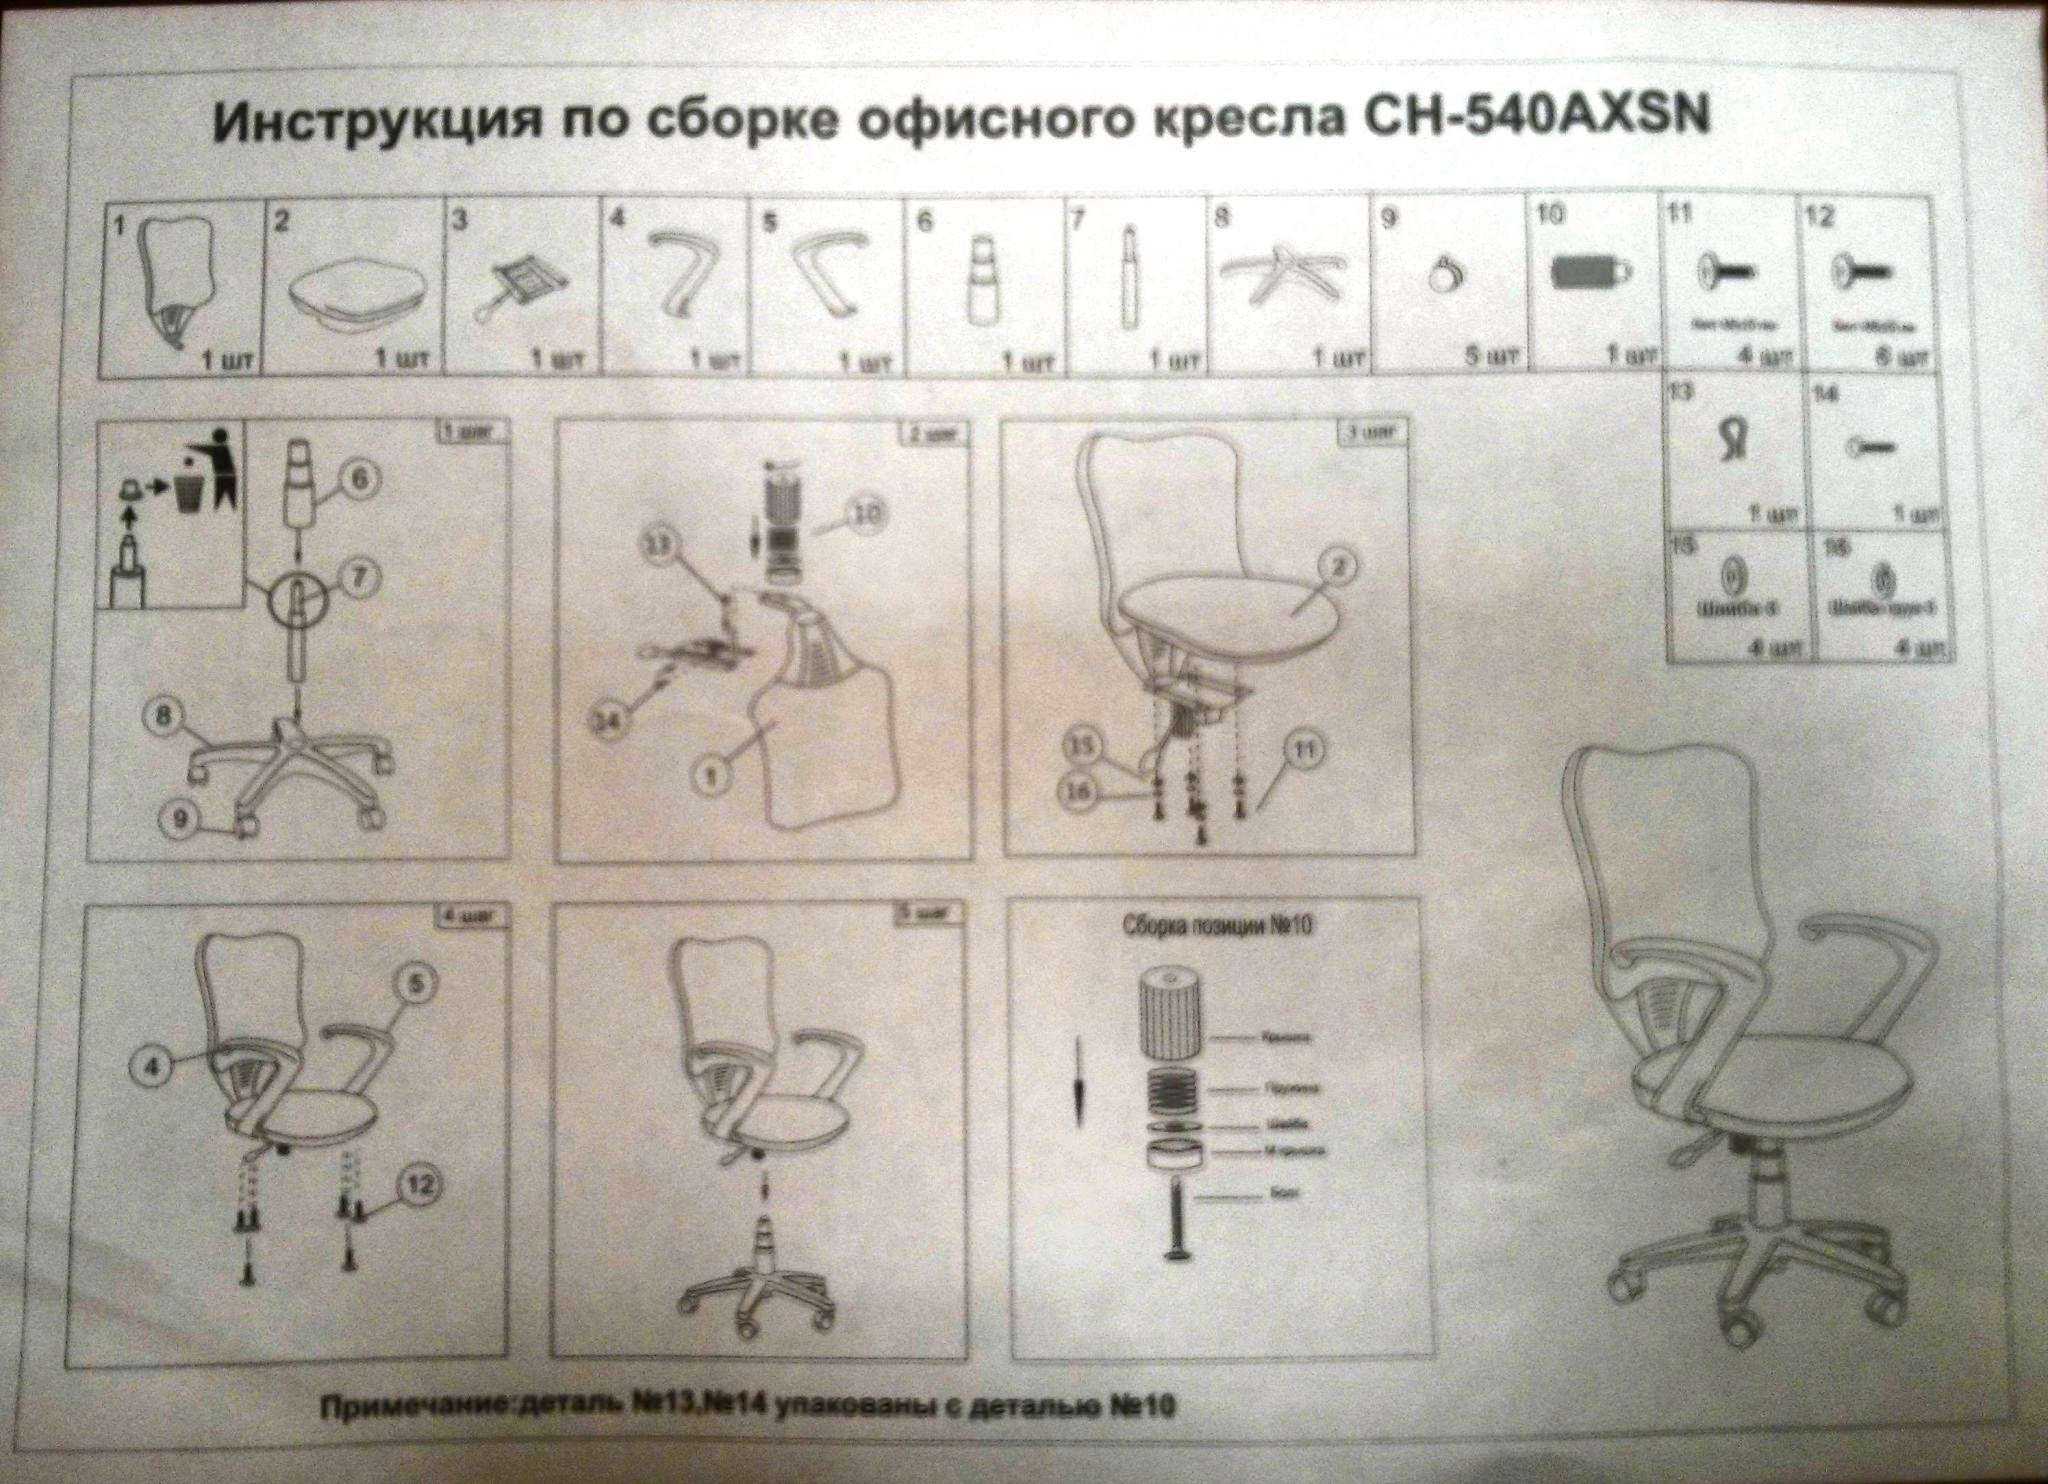 Как отрегулировать офисное кресло (с иллюстрациями)